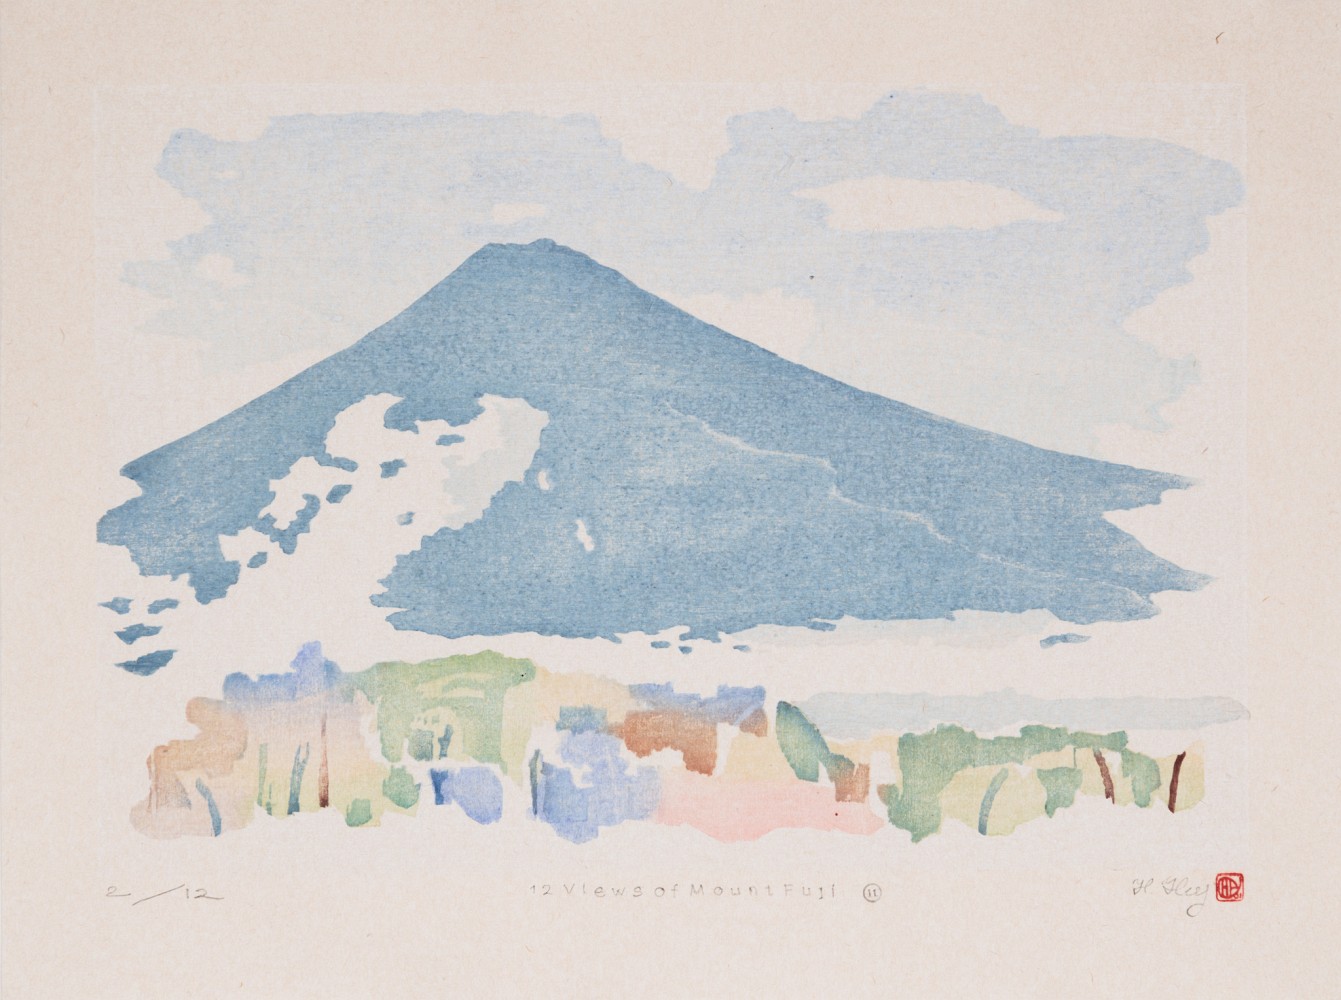 Full image of artwork 12 Views of Mount Fuji #11